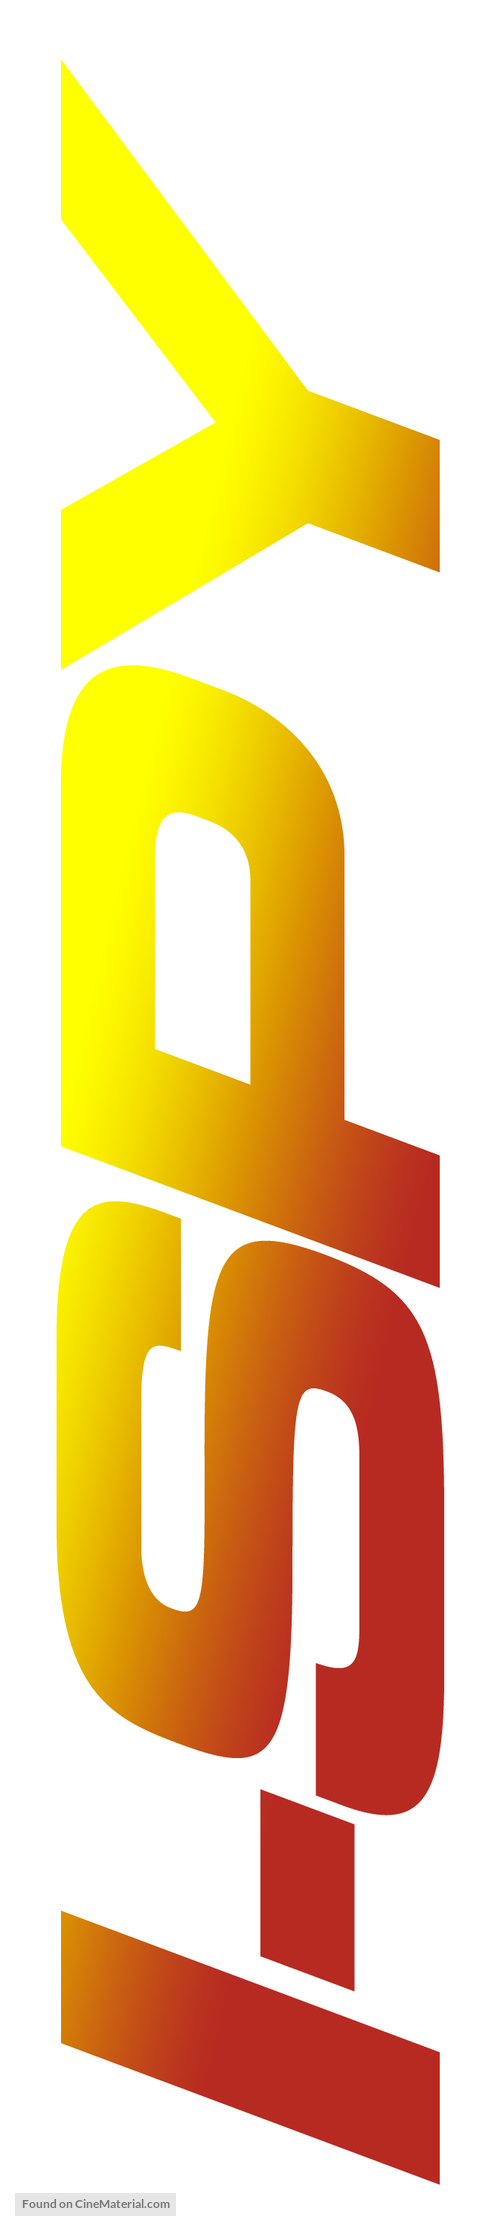 I Spy - Logo